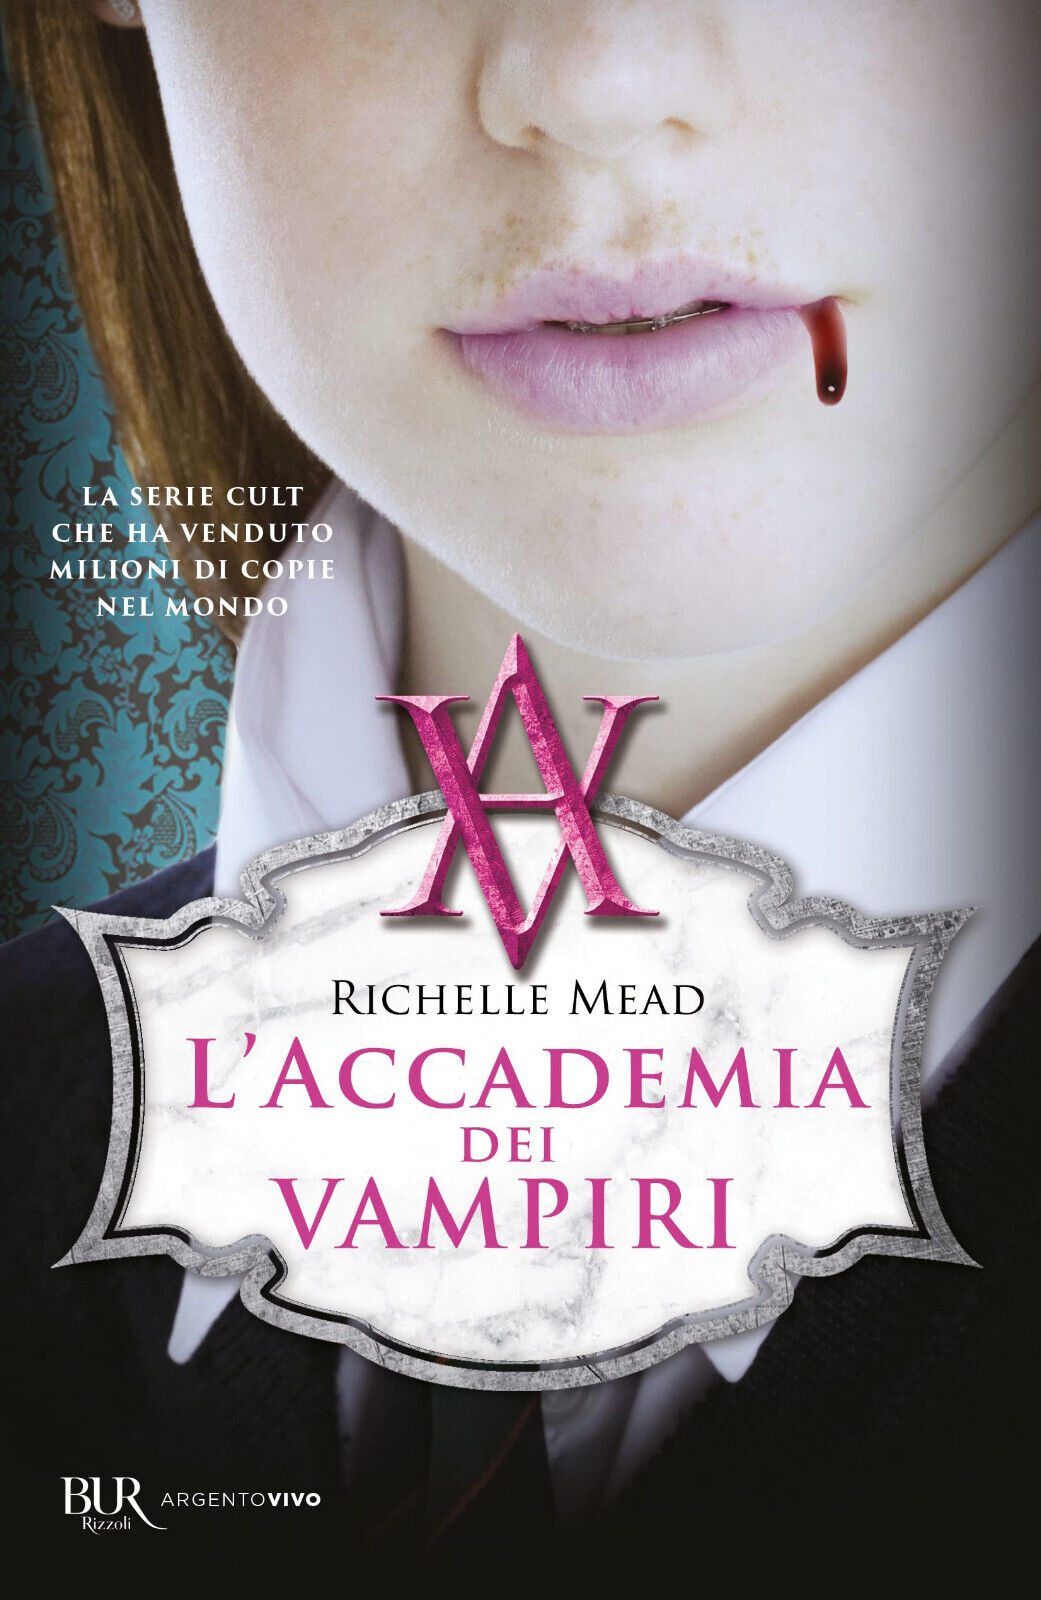 L' accademia dei vampiri - Richelle Mead - Rizzoli, 2017